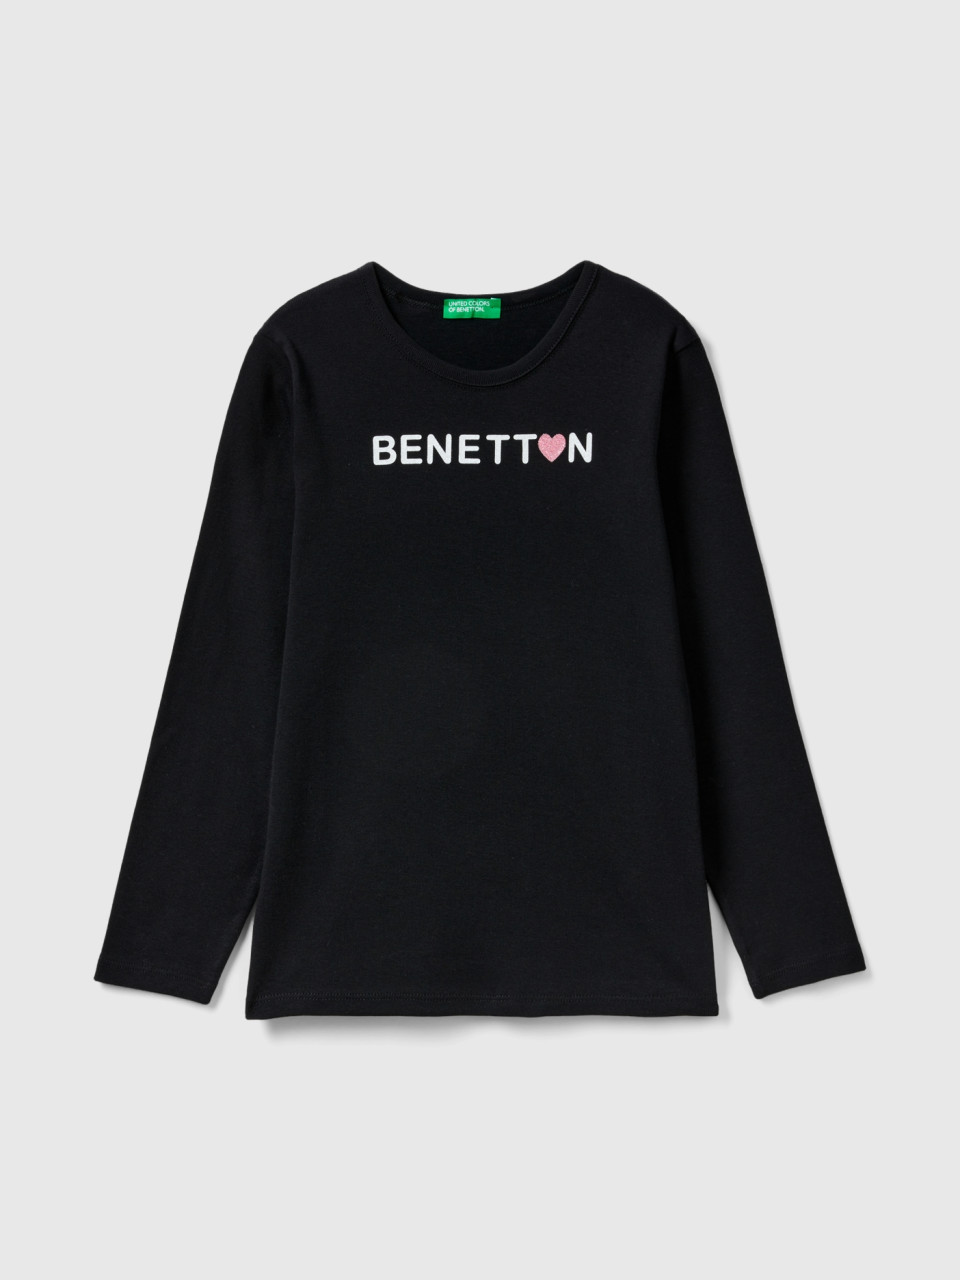 Benetton, Camiseta De Manga Larga Con Estampado De Glitter, Negro, Niños